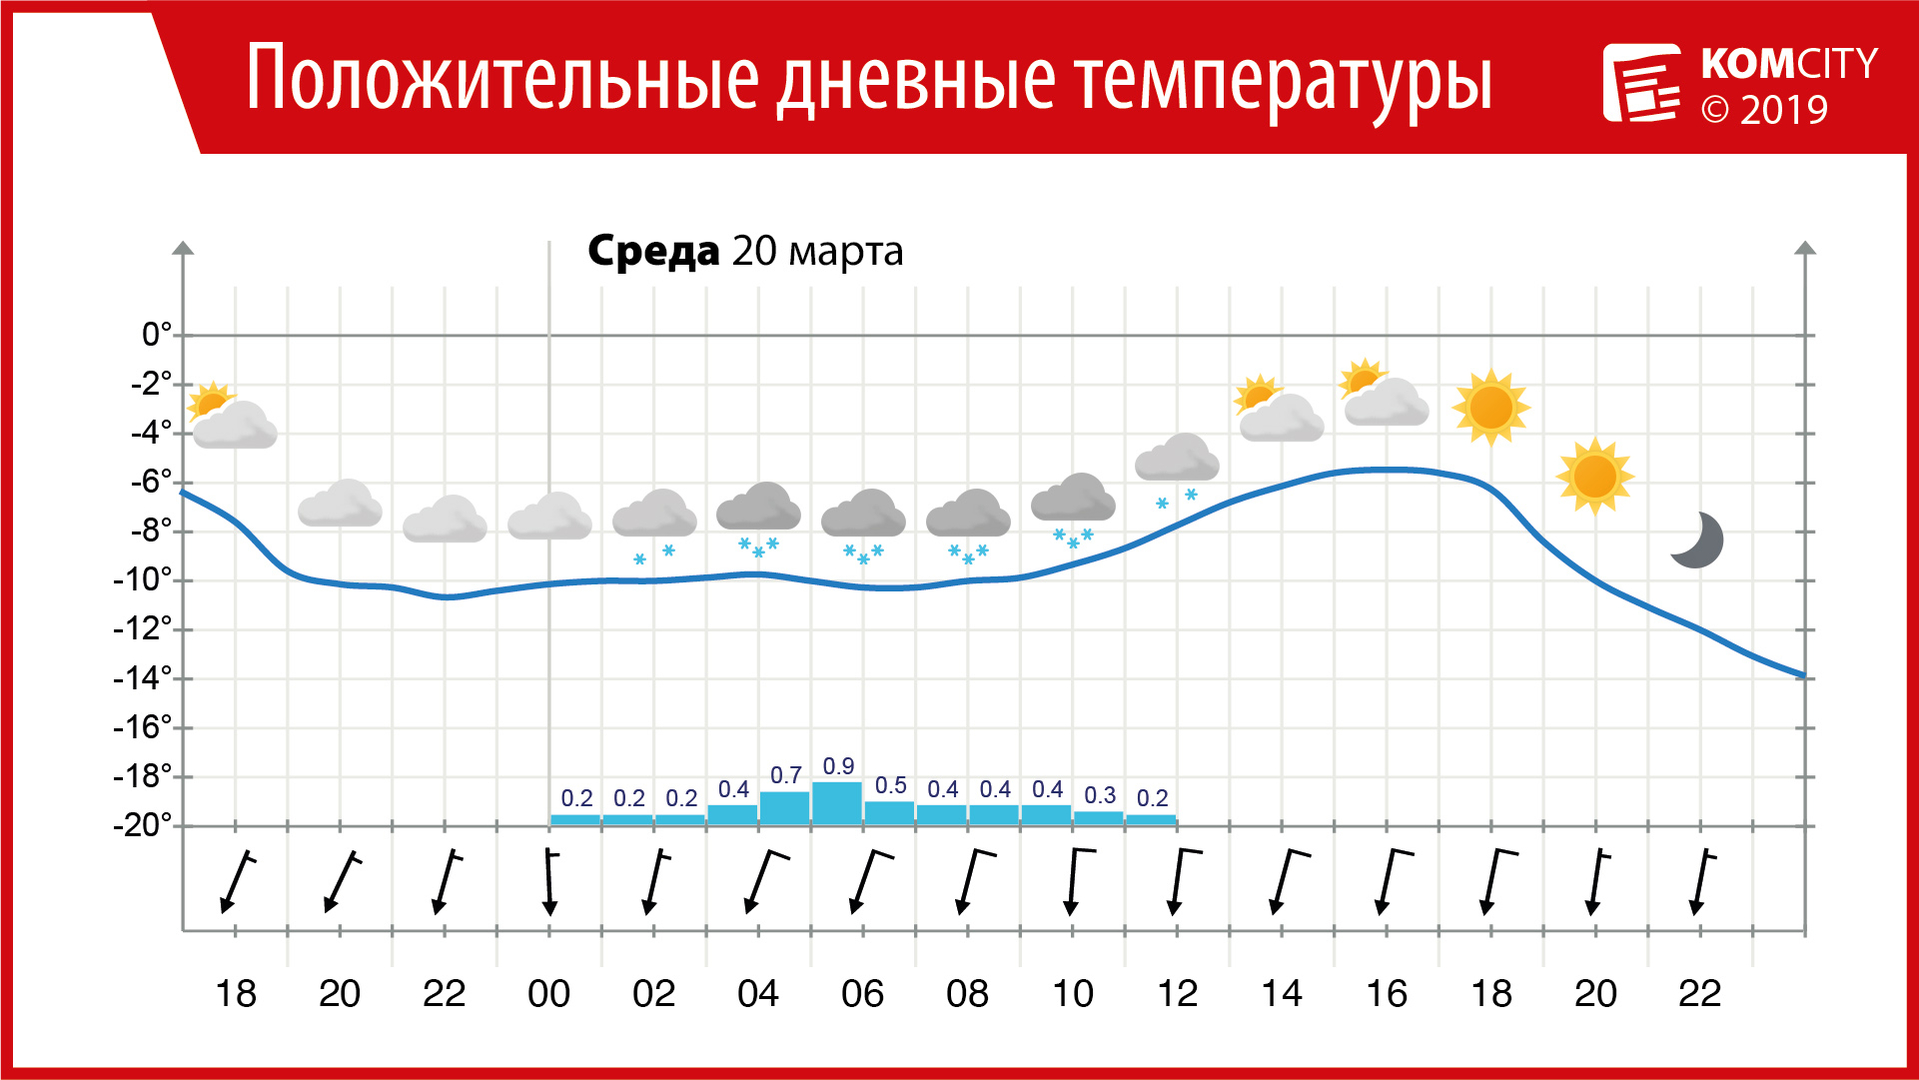 МЧС предупредило жителей Комсомольска-на-Амуре об ухудшении погодных условий